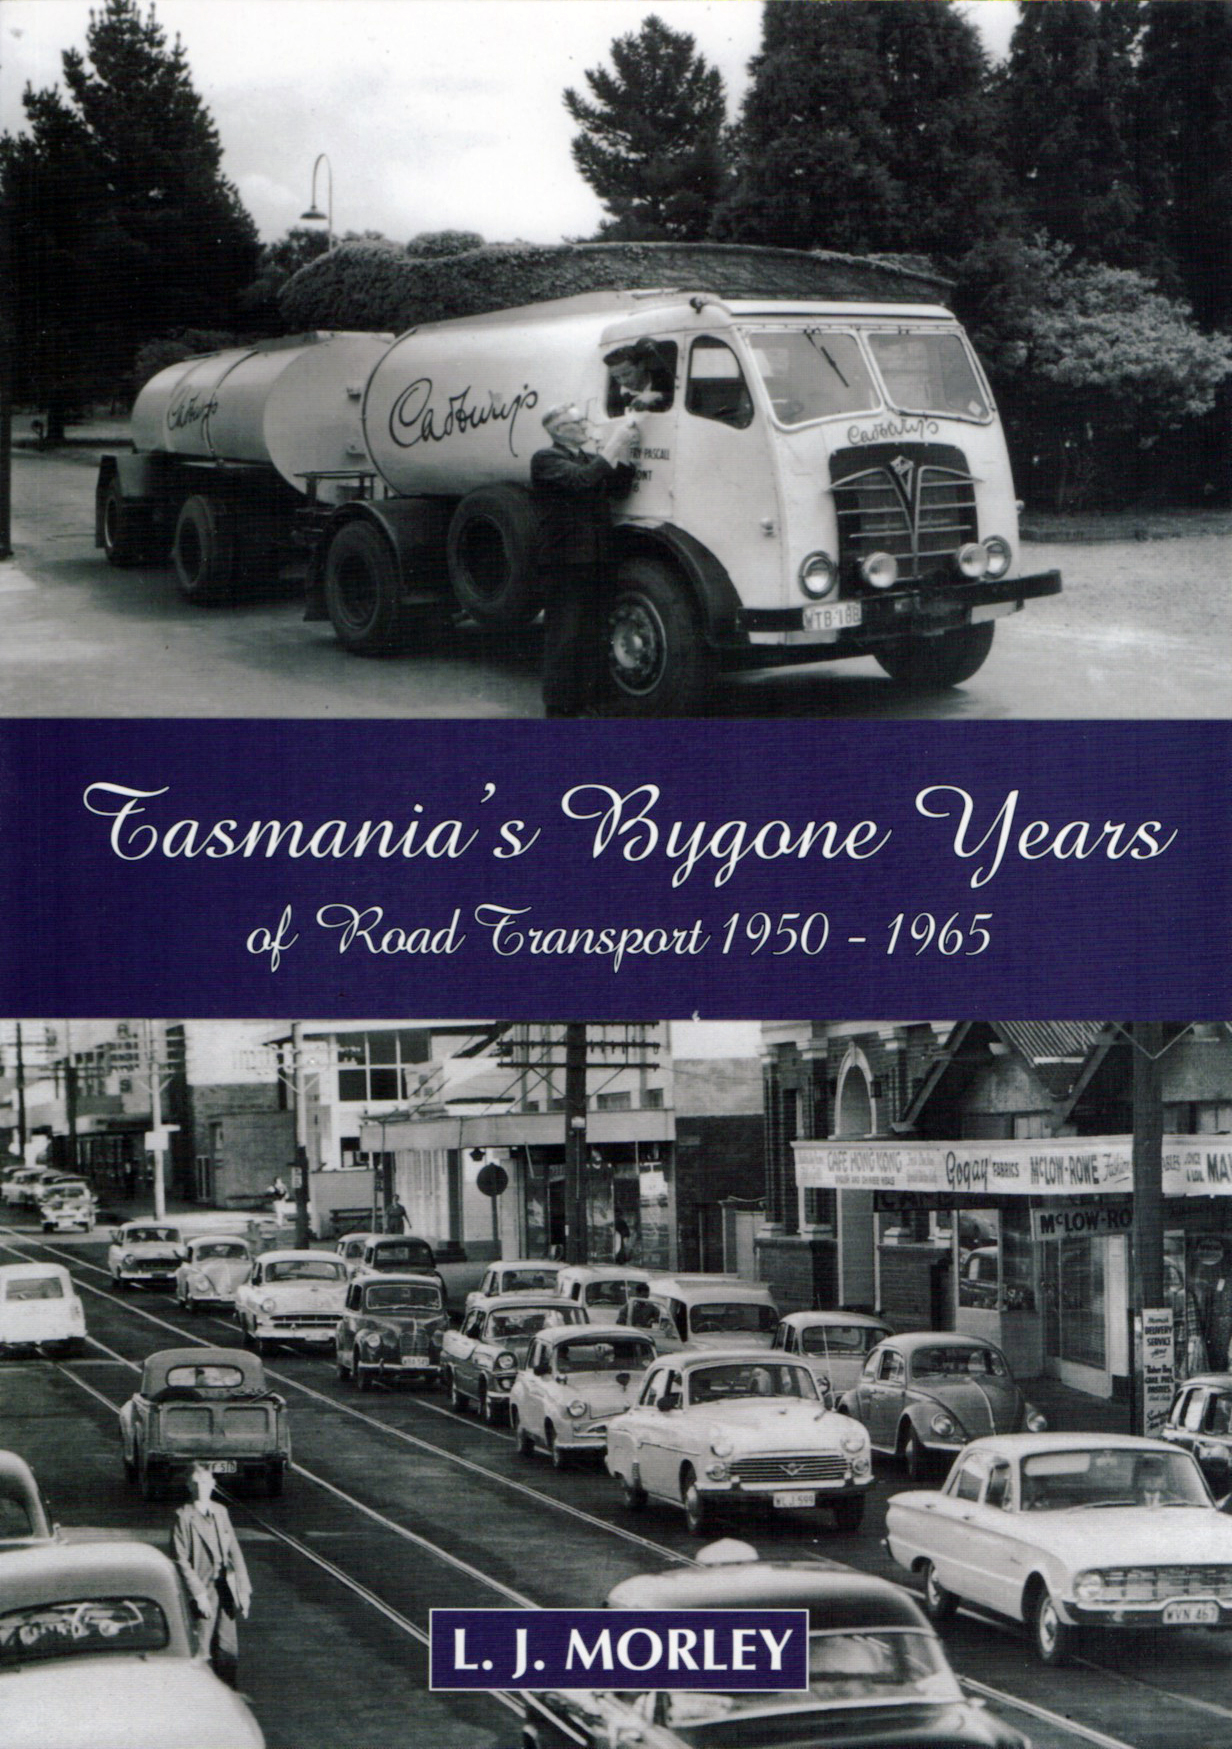 Tasmania's Bygone Years of Road Transport 1950 - 1965